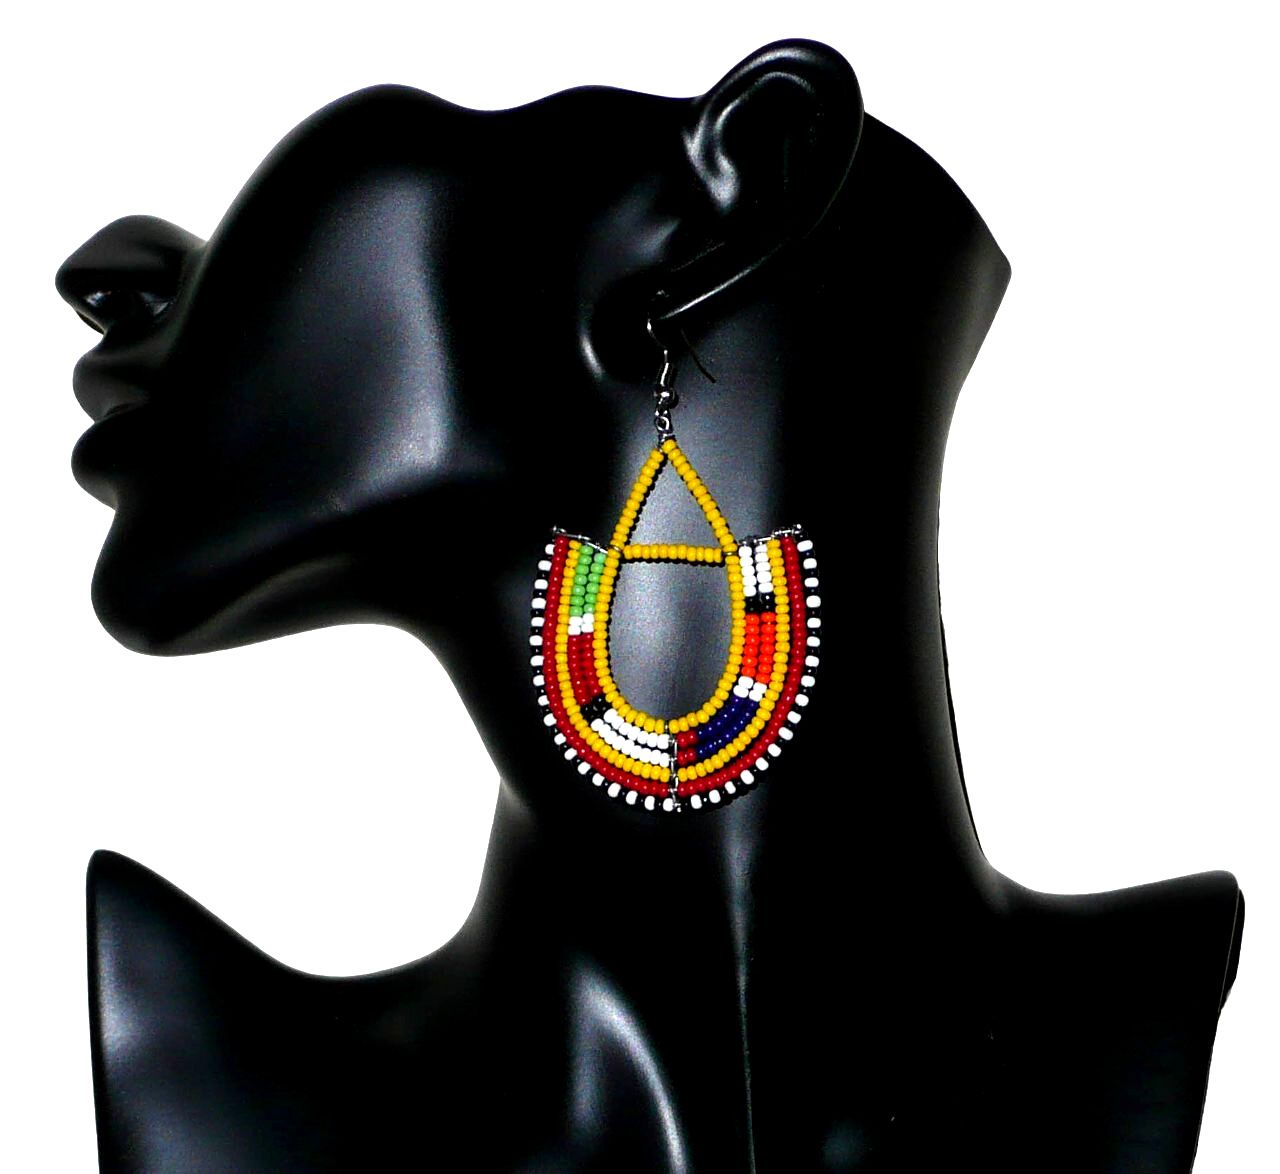 Bijoux africains Massai. Boucles d'oreilles africaines à motifs traditionnels Massai composées de perles de rocaille jaunes et multicolores enfilées sur des fils de fer montés en forme d'ancres . Elles mesurent 7,5 cm de long et 4,5 cm de large et se portent avec des crochets en acier inoxydable sur des oreilles percées. Elles sont sur cette photo présentées sur un mannequin. Timeless Fineries